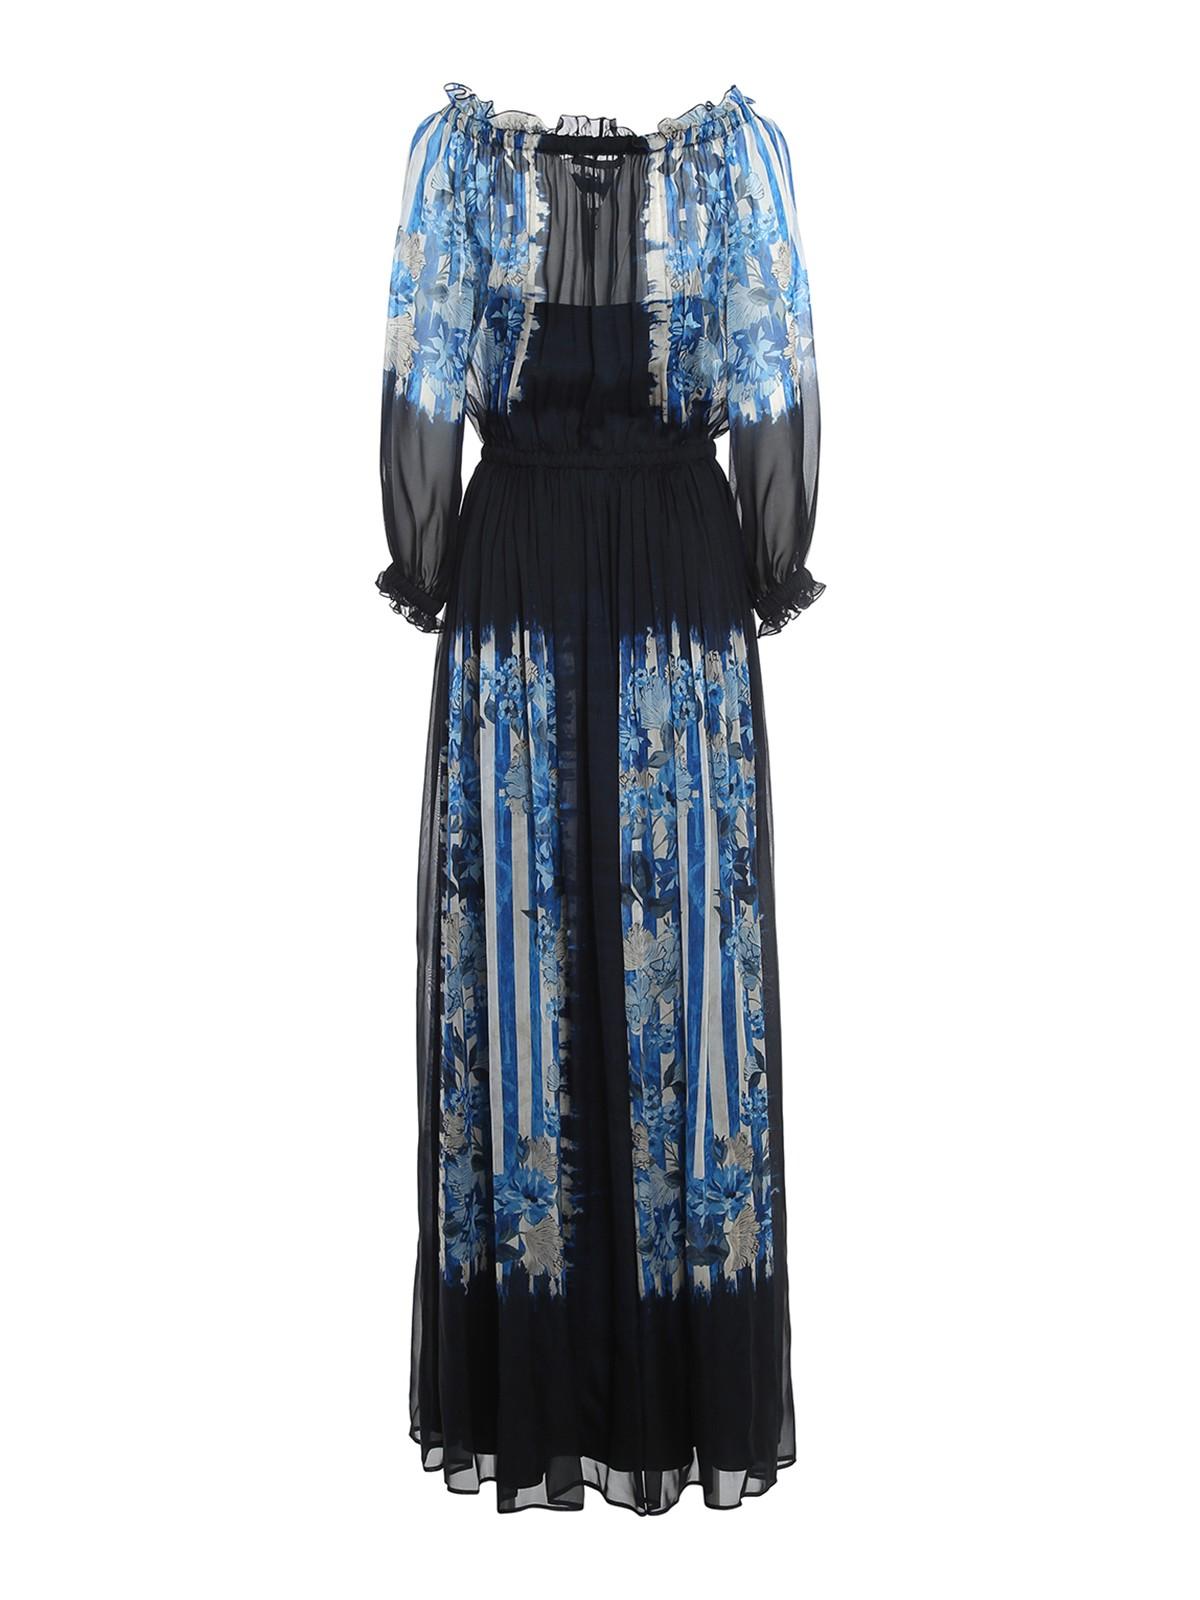 Alberta Ferretti Chiffon Silk Dress in Blue - Lyst